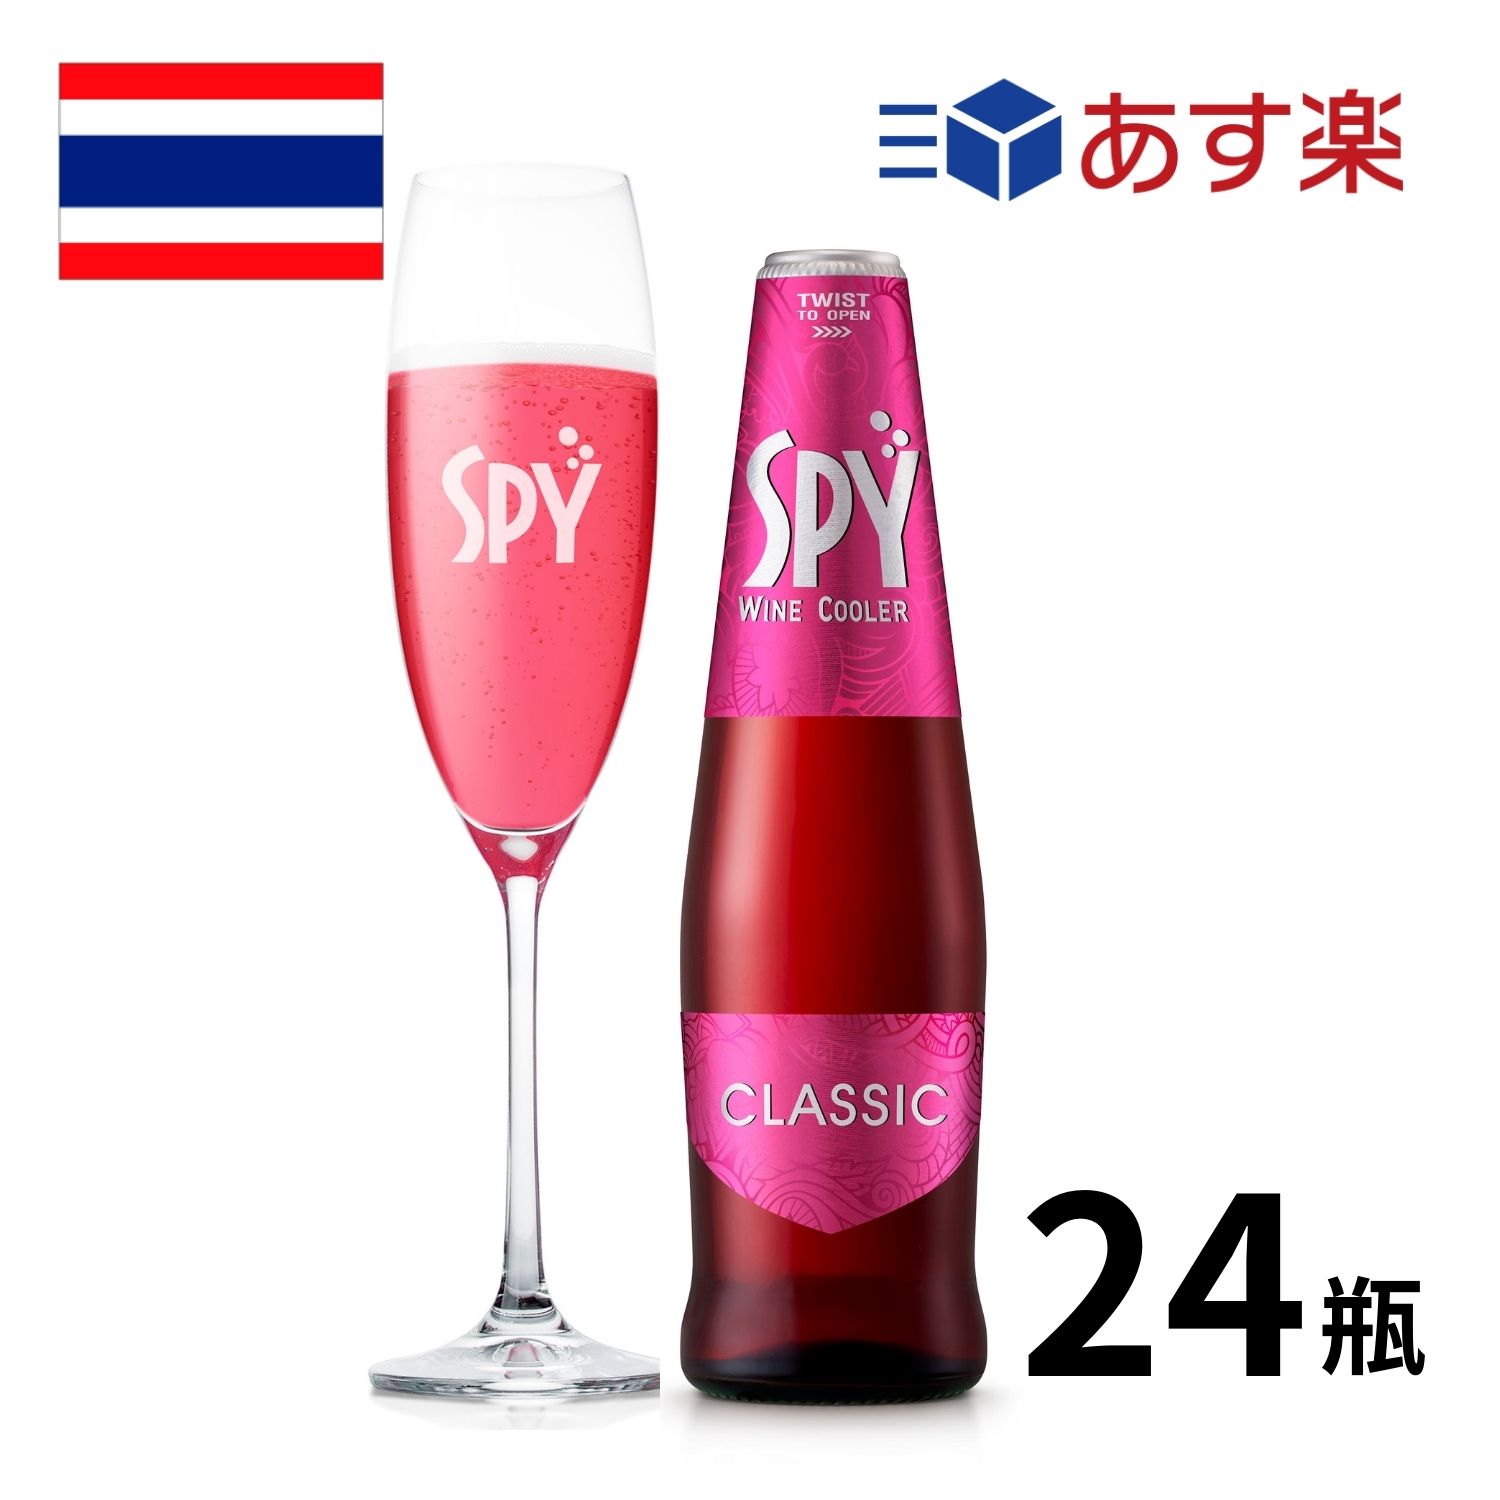 商品紹介 SPY(スパイ)シリーズは、タイ産のワインソーダで割ったフレッシュでフルーティーな味わいが楽しめるワインクーラーです。 ●SPYクラシック(ALC.5%・275ml×24本） ・バラやストロベリーを思わせるミックスベリーフレーバー。ロゼワインベース。 ・内容量：275ml x 24本 ・原材料：ワイン、ソーダ水、香料 ・保存方法：日なたを避けて、ていねいに。 ・商品、ケース等のデザインの変更が予告無く行われる場合があります。 ※こちらの商品は「あす楽対象」です。 楽天倉庫からの自動発送のため、注文後のキャンセル、変更はお受けできません。 ・12:00（午前12時）までに決済完了で最短翌日お届けいたします。 ・あす楽対象エリアをご確認の上、ご注文ください。 ・お届け日指定で「あす楽」が選択されていることをご確認ください。 ・外箱には入れず、商品の箱のままでのお届けとなります。 ・ラッピング、のし、メッセージカードは承ることができません。 ・備考欄、お問い合わせ等での日時指定、ご注文内容の変更はできません。 ・商品を複数ご注文いただいた場合、別々のお届けとなる場合がございます。 ・あす楽商品以外とのご注文をいただいた際には、同時にお届けできません。 ・配送伝票の注文者欄は「楽天世界のお酒専門店Ikemitsu」と表示されます。 ・注文者情報に記載された氏名が伝票に記載されます。「備考欄」等でご指定いただいても変更できませんのでご了承くださいませ。 「お酒は20歳から！未成年者への酒類の販売は固くお断りしています！」【タイ】スパイクラシック（SPY CLASSIC）瓶 275ml×24本入 タイ産ワインをのソーダで割った新感覚RTDカクテル SPY(スパイ)シリーズはタイ産のワインをベースにした、フレッシュでフルーティーな味わいが楽しめるワインクーラー。タイではコンビニやスーパーなどでもよく見かけるブランドです。 フルーティーなフレーバーとボトルのままでも飲めるキュートなデザインが人気。カラフルなバリエーションは全部で8種類です。 スパイクラシックは、タイ産のぶどうから作られる赤ワインと白ワインをベースに炭酸水、フルーツエキスなどをプラス。ミックスベリーフレーバーで、バラやストロベリーを思わせる華やかな香りが特徴。美しいピンク色で、甘味のあるロゼワイン風の仕上がりです。 商品名 SPY CLASSIC（スパイ・クラシック) アルコール度数 4.0％ タイプ 甘味果実酒（ワインクーラー）※ワインをソーダで割ったお酒です。 スタイル スパークリング 原産国 タイ 容量 275ml バリエーション 24本入 味の特徴 SPYクラシックは、地元のぶどうから作られる赤ワインと白ワインをベースに炭酸水、フルーツエキスなどをプラス。ミックスベリーフレーバーで、バラやストロベリーを思わせる華やかな香りが特徴。美しいピンク色で、甘味のあるロゼワイン風の仕上がり。 ※こちらの商品は「あす楽対象」です。 楽天倉庫からの自動発送のため、注文後のキャンセル、変更はお受けできません。 ・12:00（午前12時）までに決済完了で最短翌日お届けいたします。 ・あす楽対象エリアをご確認の上、ご注文ください。 ・お届け日指定で「あす楽」が選択されていることをご確認ください。 ・外箱には入れず、商品の箱のままでのお届けとなります。 ・ラッピング、のし、メッセージカードは承ることができません。 ・備考欄、お問い合わせ等での日時指定、ご注文内容の変更はできません。 ・商品を複数ご注文いただいた場合、別々のお届けとなる場合がございます。 ・あす楽商品以外とのご注文をいただいた際には、同時にお届けできません。 ・配送伝票の注文者欄は「楽天世界のお酒専門店Ikemitsu」と表示されます。 ・注文者情報に記載された氏名が伝票に記載されます。「備考欄」等でご指定いただいても変更できませんのでご了承くださいませ。 ・商品、ケース等のデザイン変更が予告無く行われる場合があります。 「お酒は20歳から！未成年者への酒類の販売は固くお断りしています！」